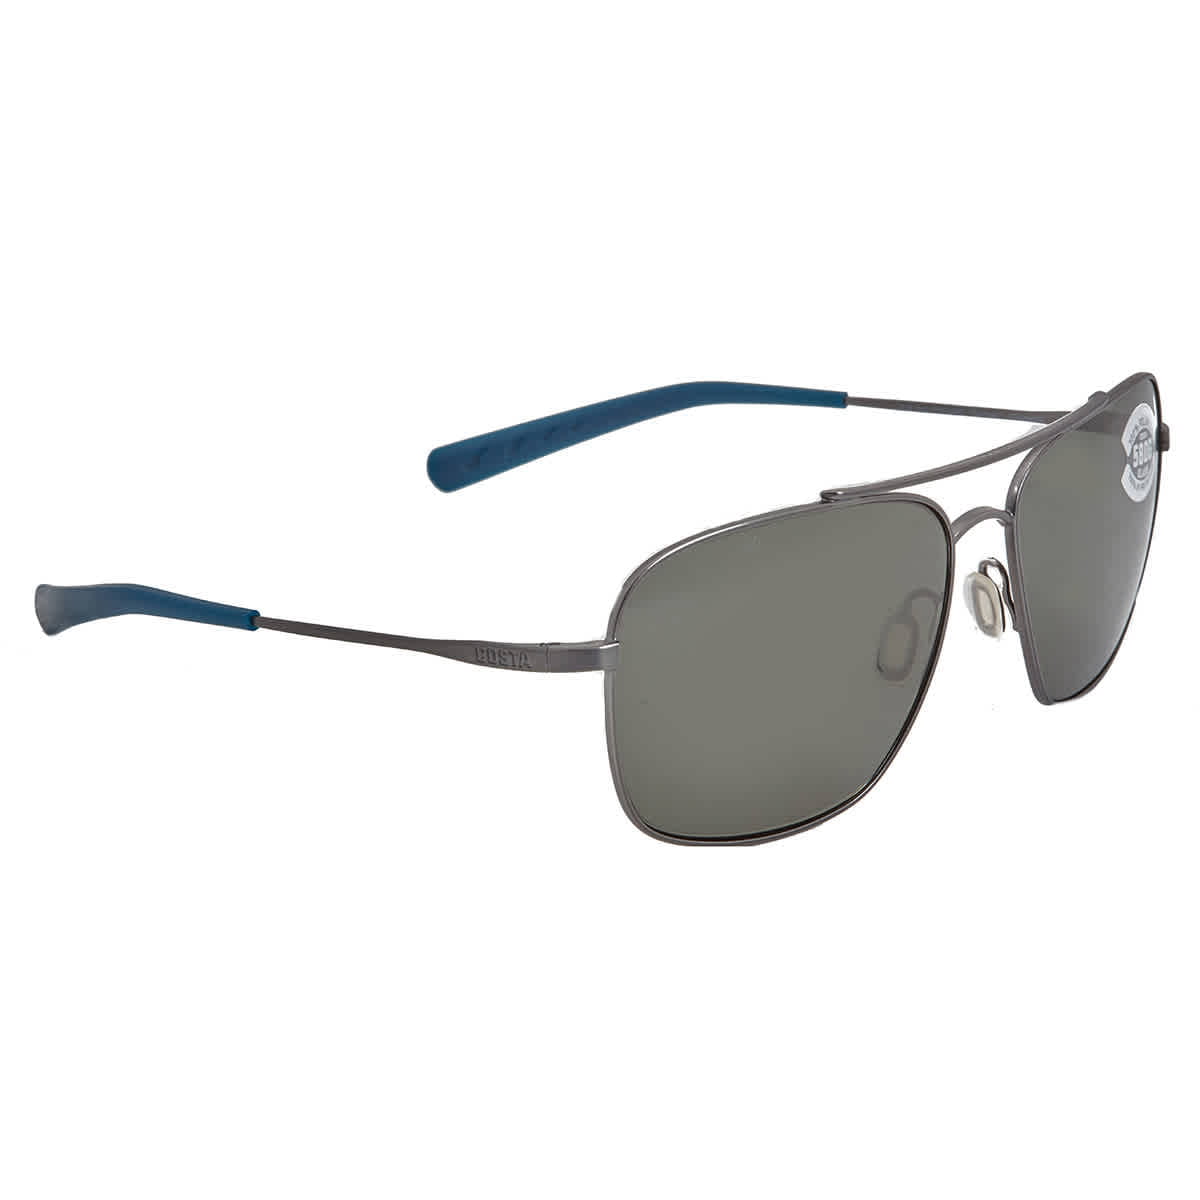 Details about   Costa Del Mar CANAVERAL Titanium Polarized Sunglasses Gray Silver Mirror 580P 